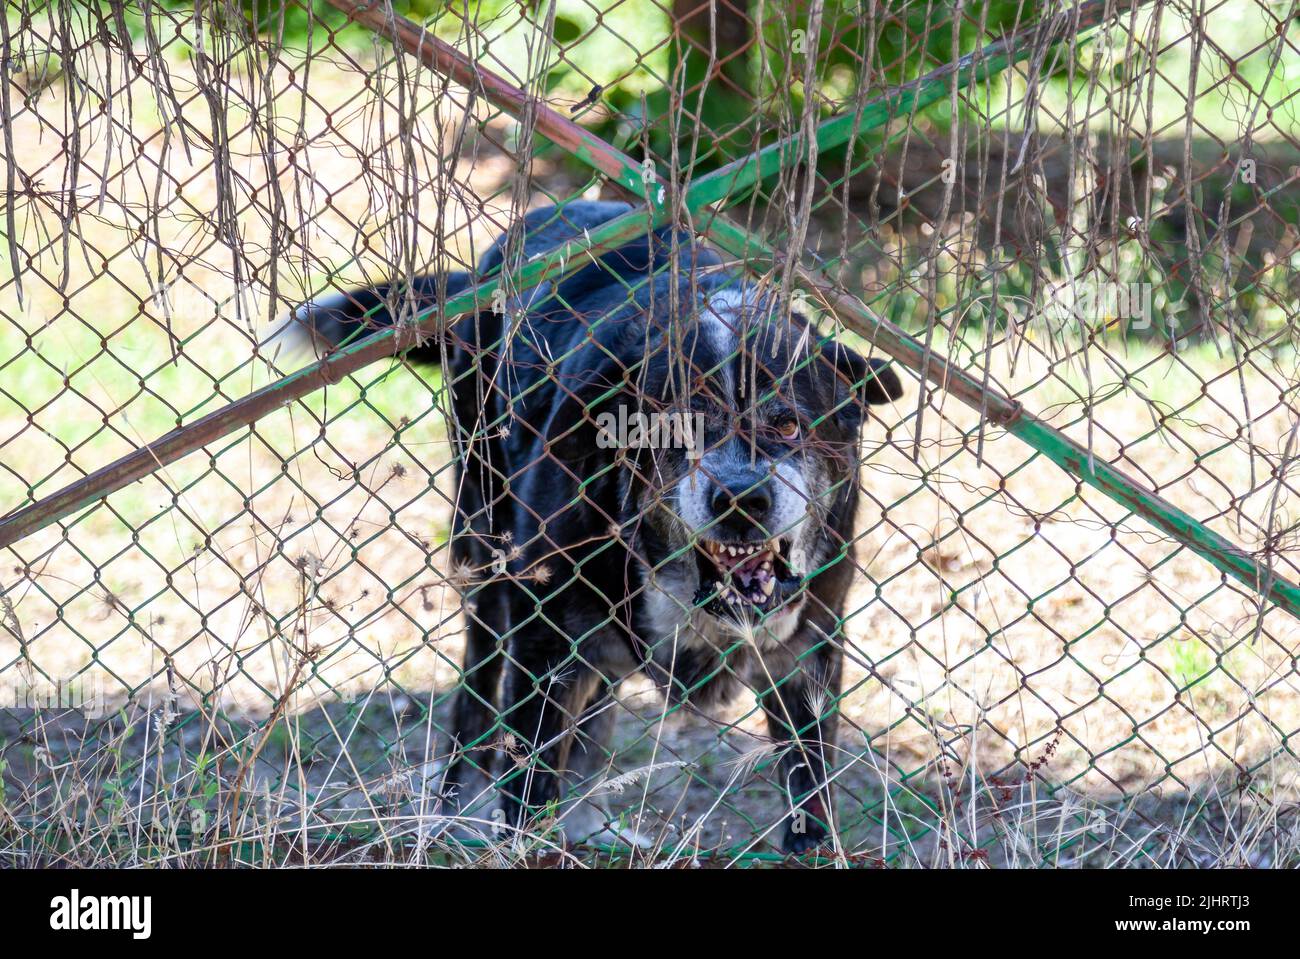 Un cane ci mostra i suoi denti mentre si ringhiera minacciosamente guardandoci dall'altro lato della recinzione. Foto Stock